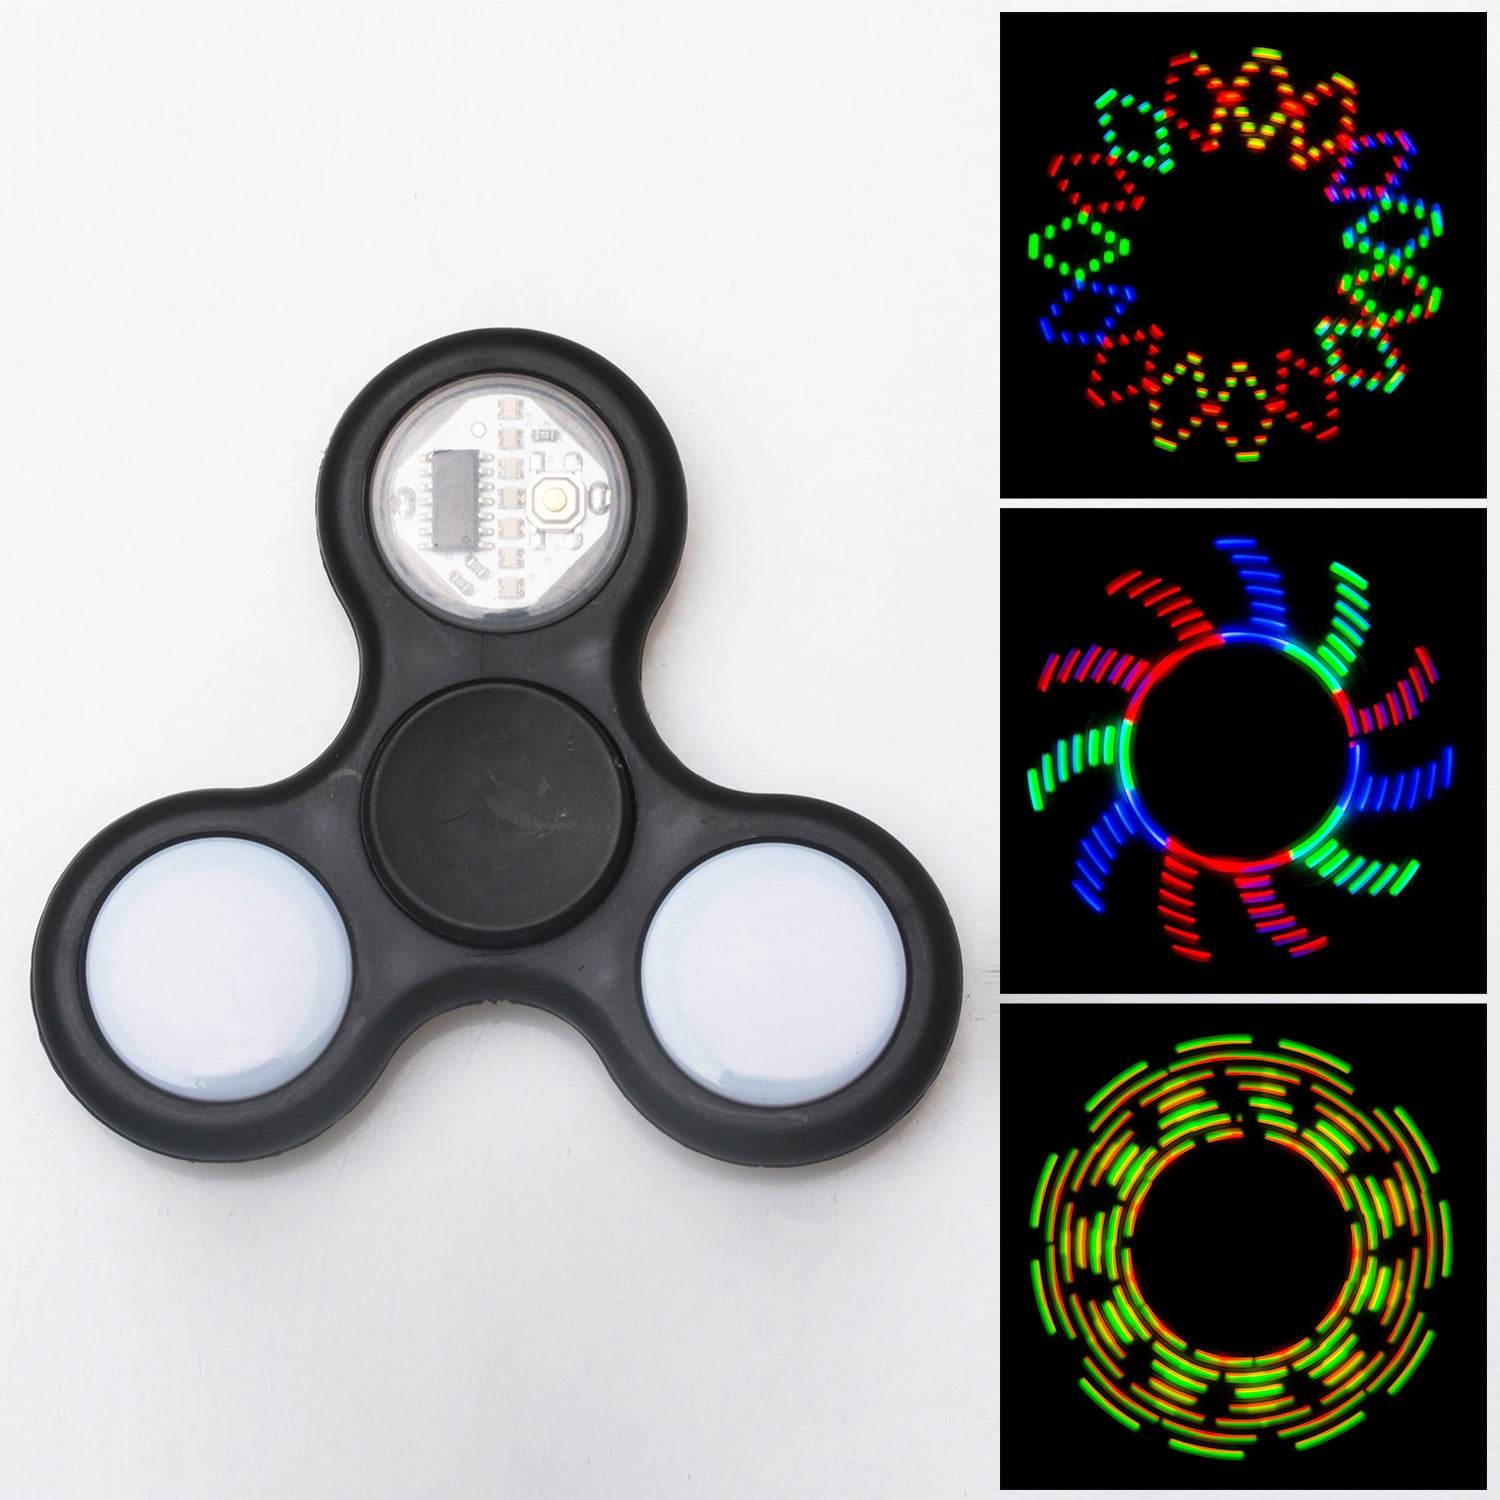 LED Tri-Spinner Fidget Hand Finger Focus Toy EDC Pocket Desk ADHD Gift Black 